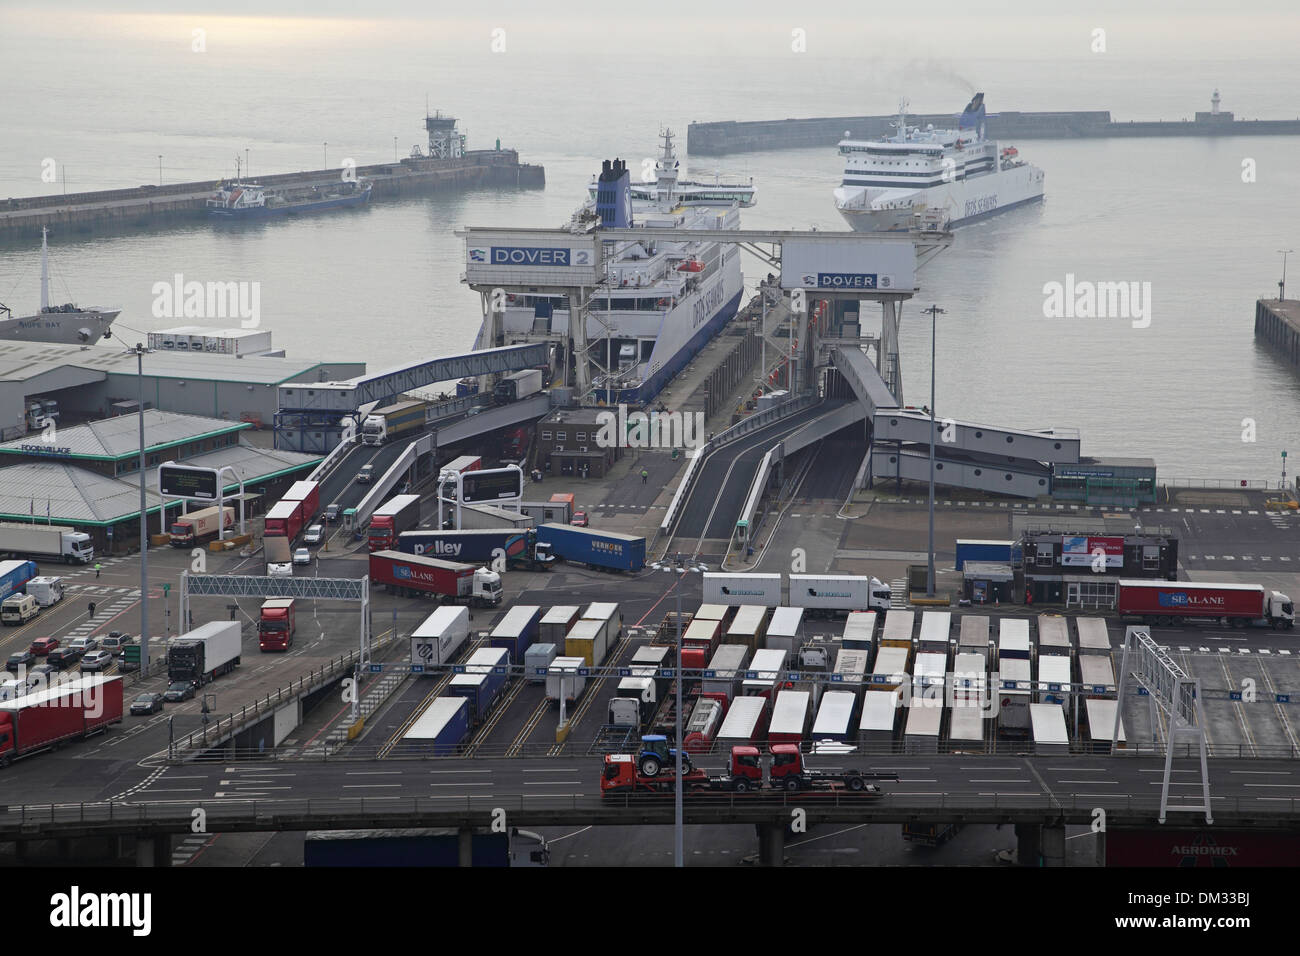 Ferries quai au port de Douvres, Kent, UK. Les camions sont indiqués en laissant un ferry comme un autre dans le port de manoeuvres Banque D'Images